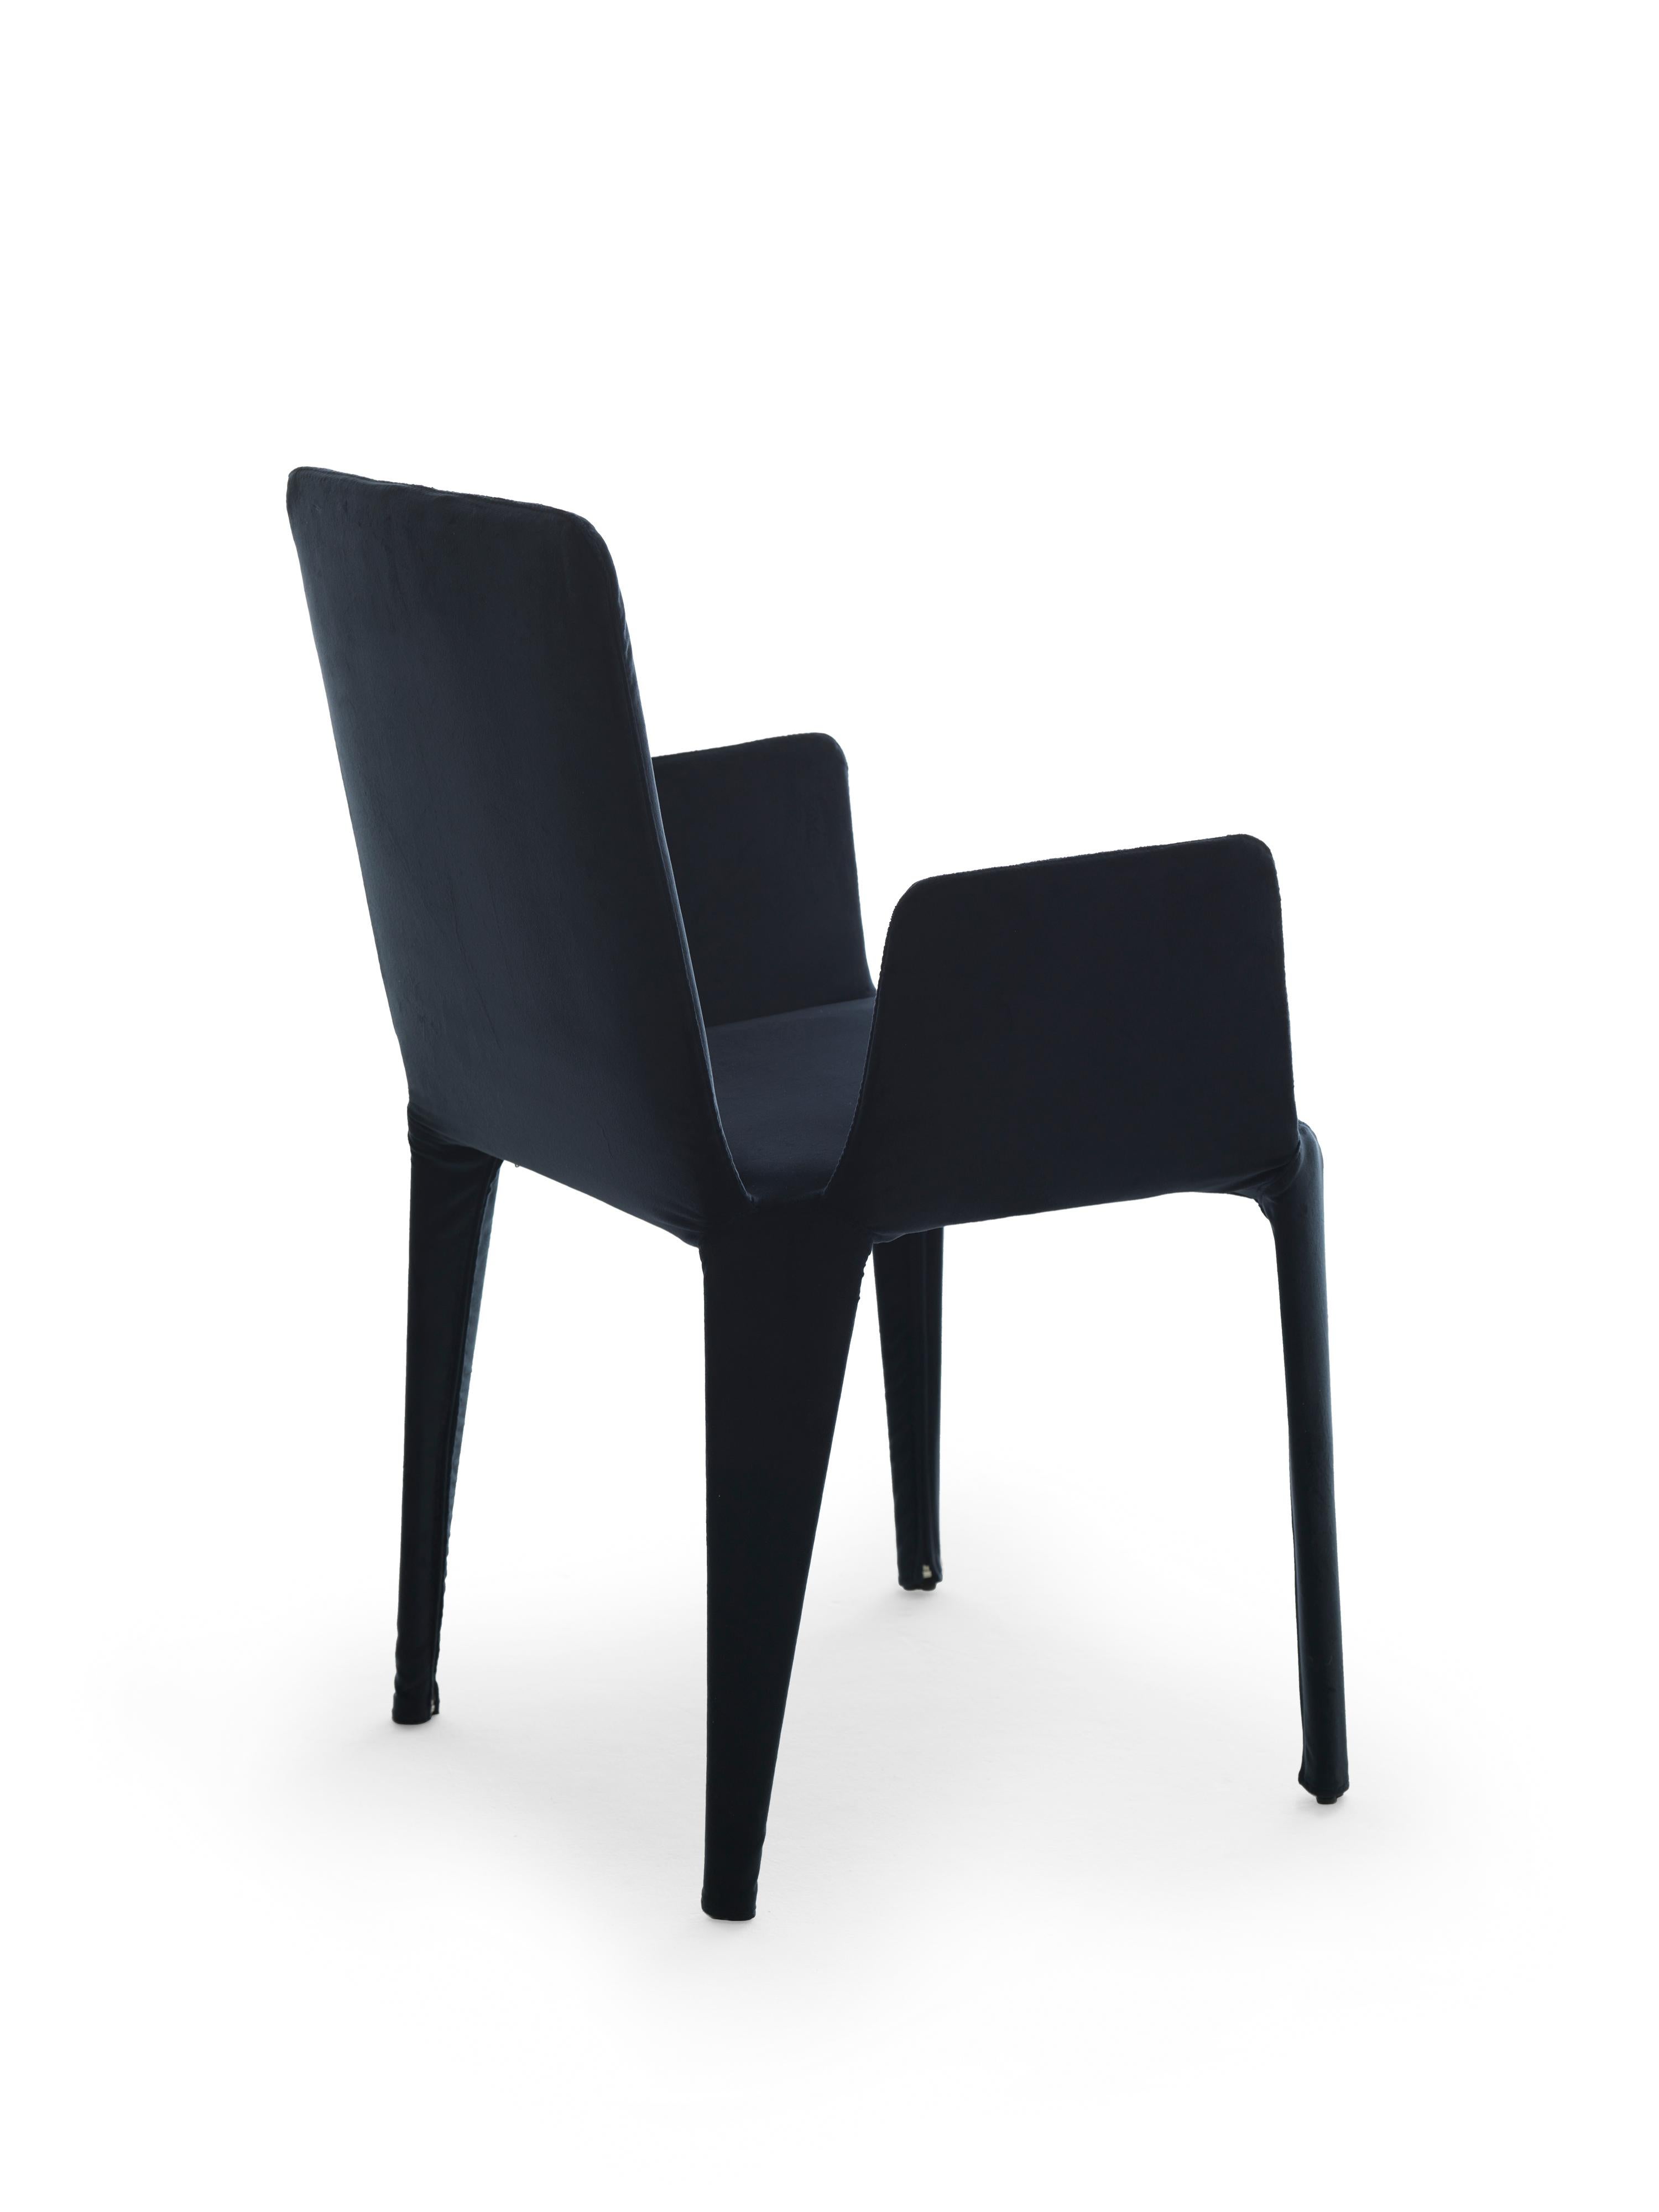 Nova est une chaise légère en textile au look précieux, entièrement déhoussable. La structure interne est un squelette minimal de tiges métalliques qui soutient les sangles élastiques et les coussins en polyuréthane et qui détermine la forme de la